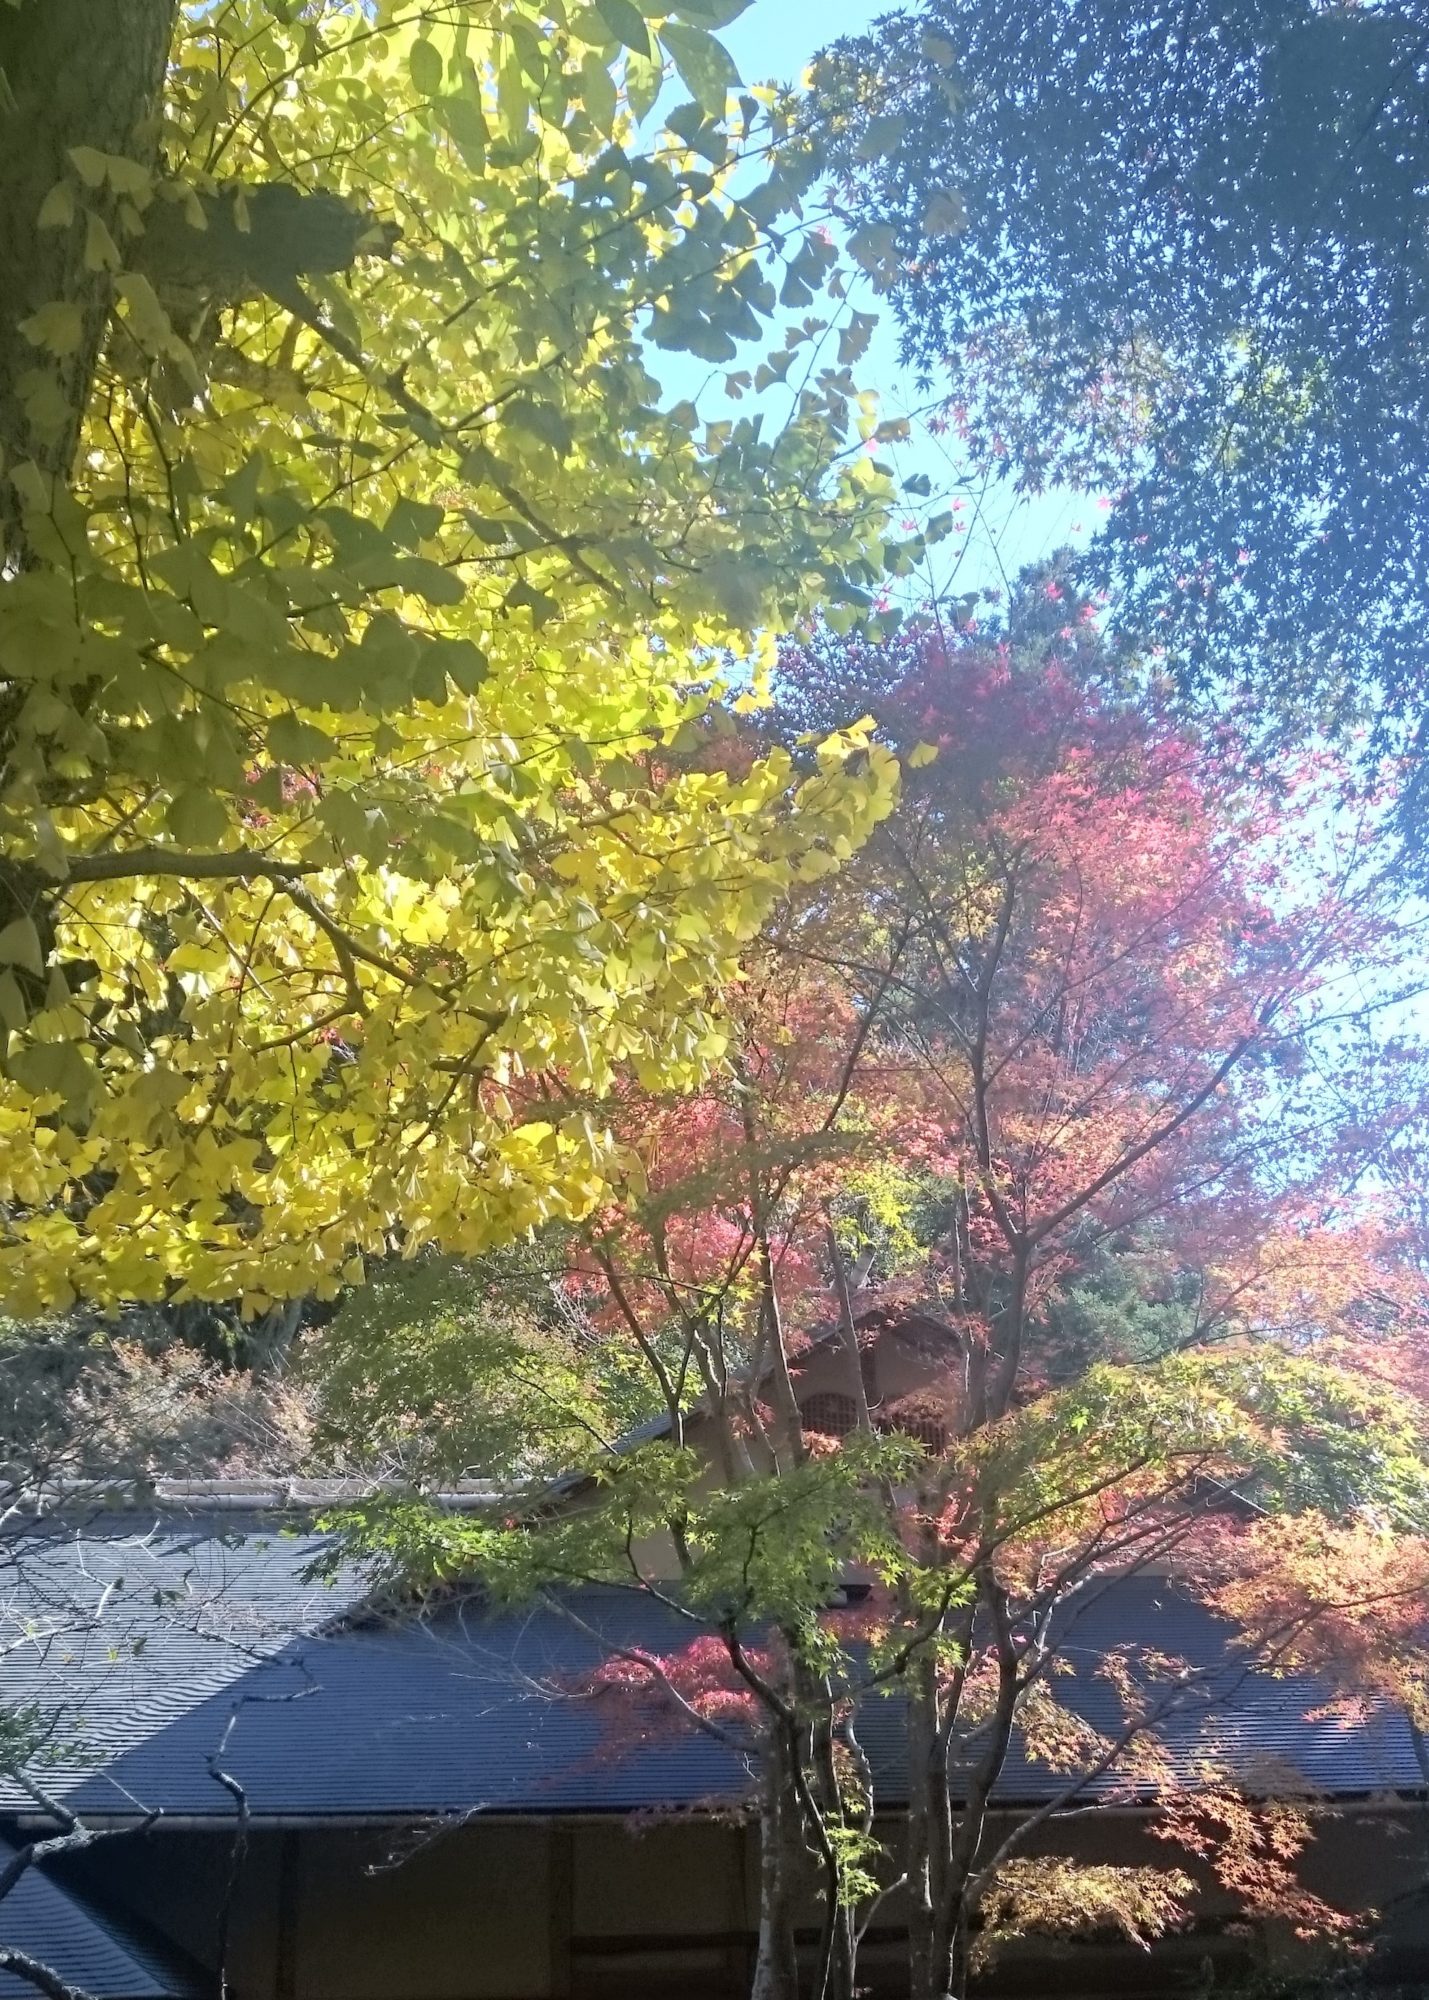  北鎌倉で紅葉とともに深まる秋をめぐるふらっとお散歩旅!!